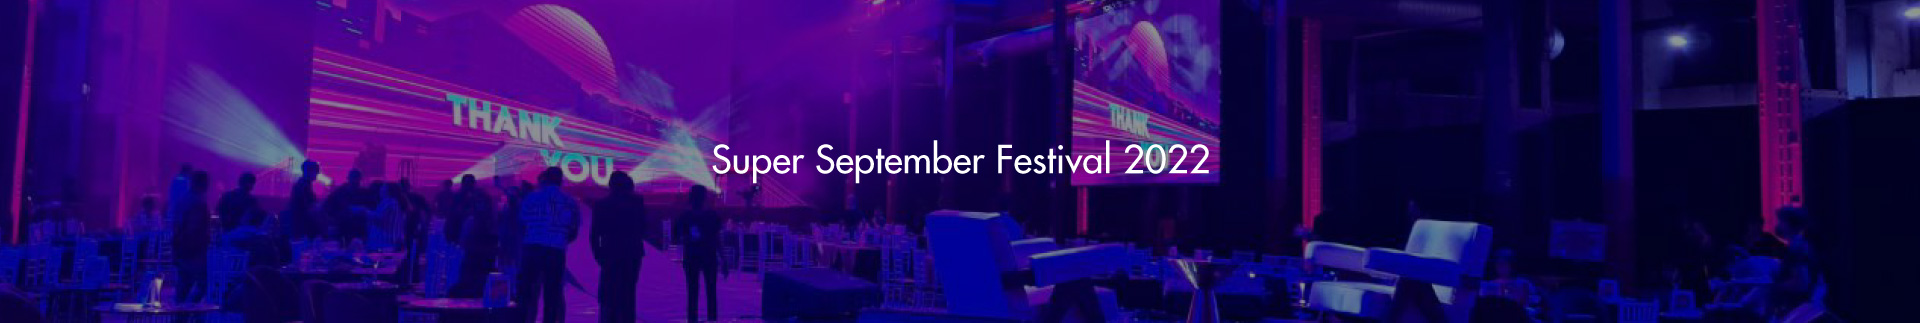 Super September Festival 2022